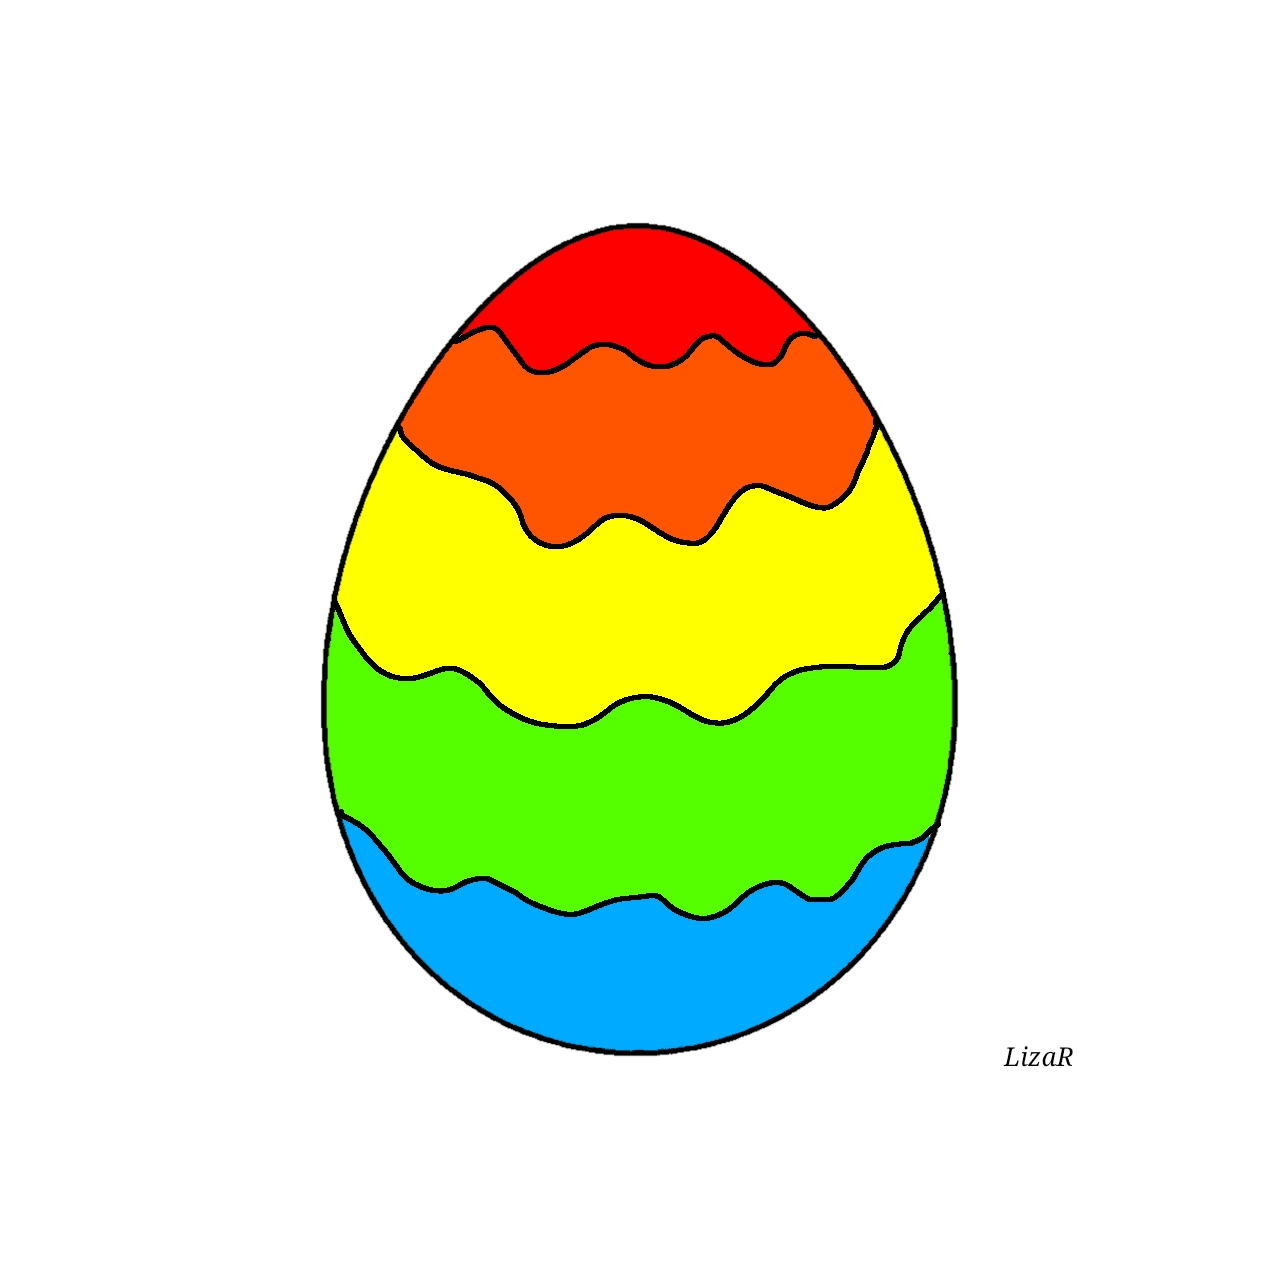 The Happy Egg #2